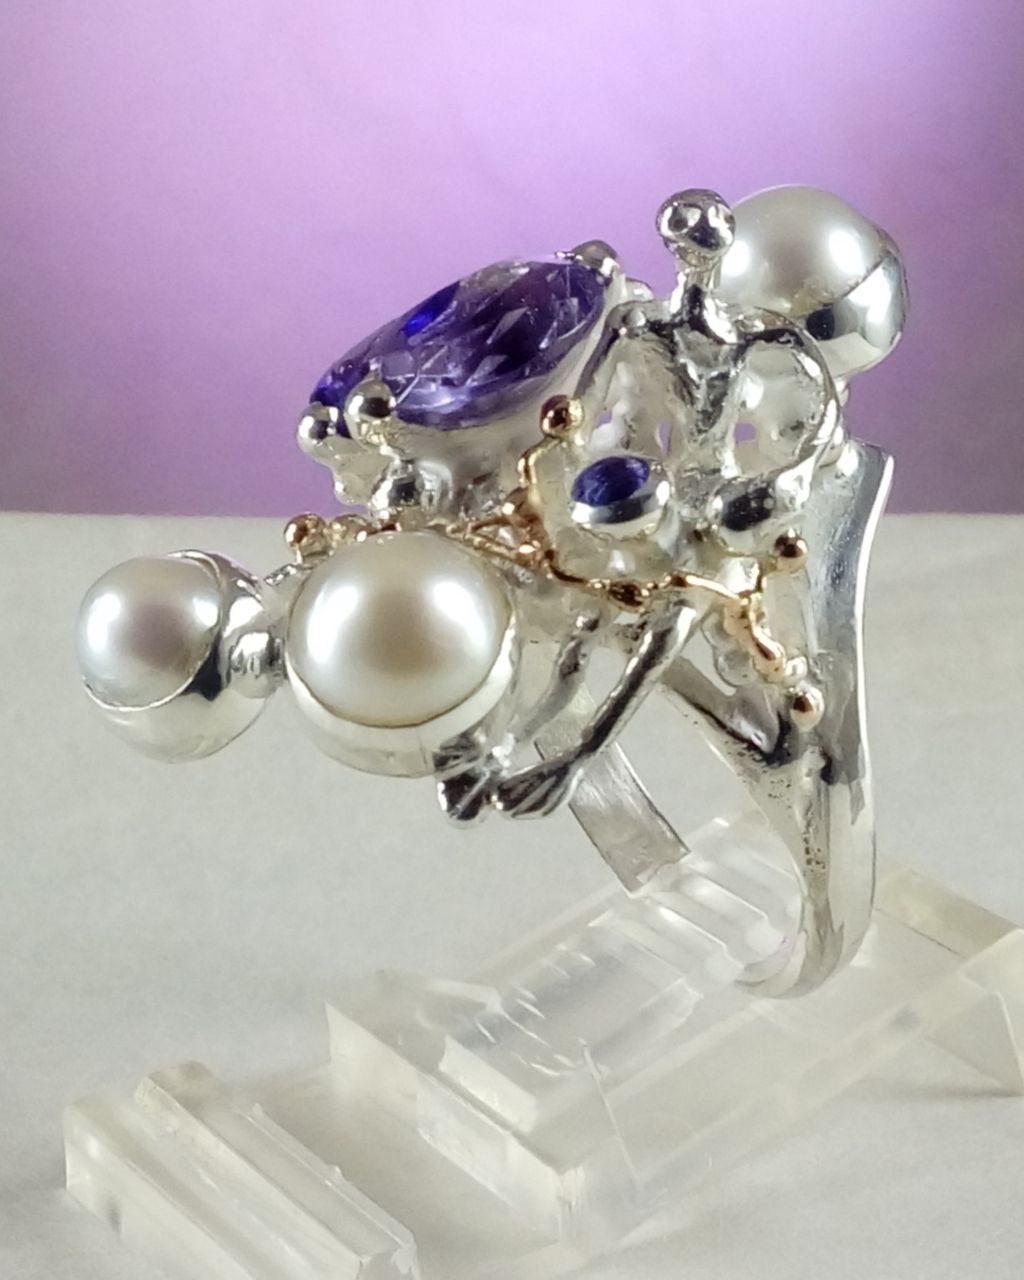 gregory pyra piro skulpturel ring 8070, smykker sælges i kunstgallerier, smykker sælges i håndværkergallerier, håndlavede ametyst smykker, håndlavede perlesmykker, smykker ingen andre har, skulpturelle smykker, håndlavet ametyst og perle ring